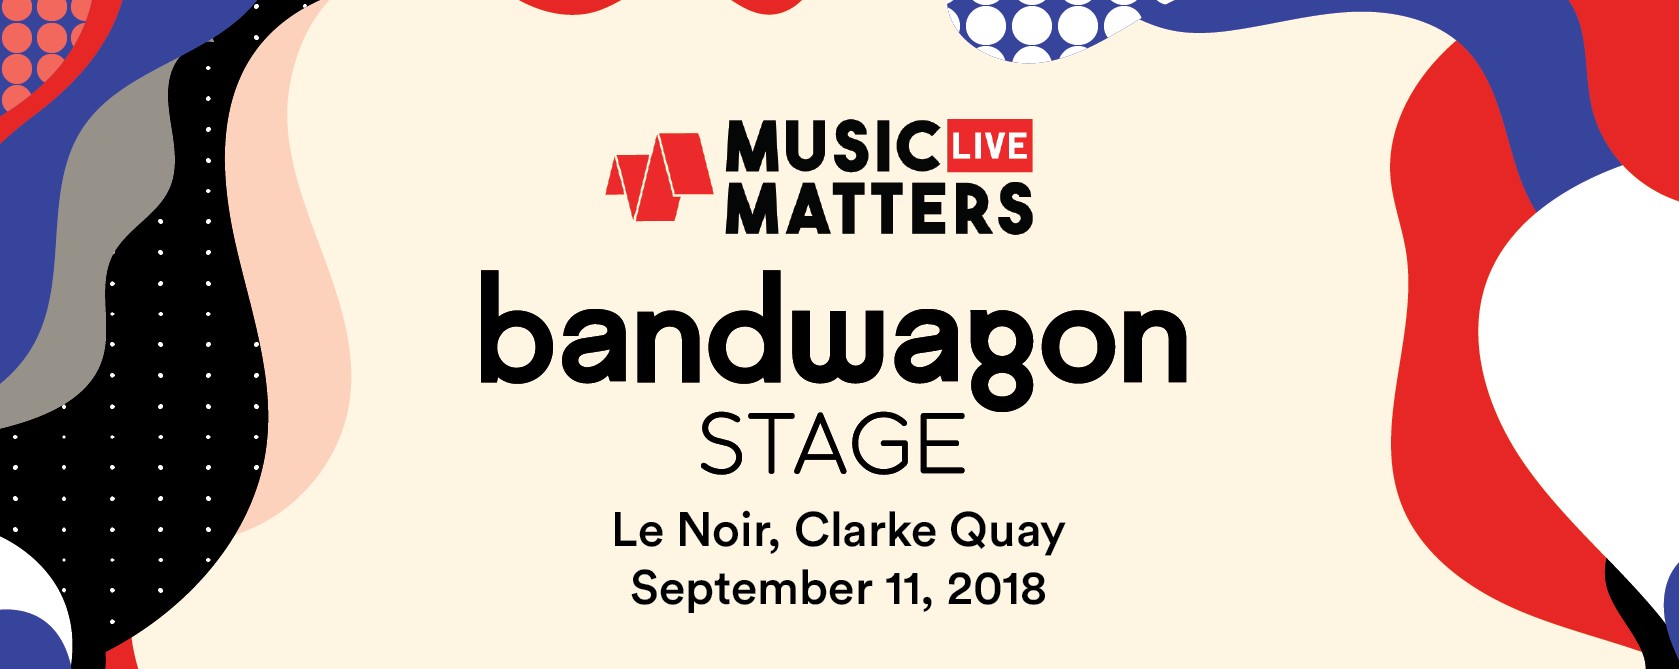 Bandwagon Stage @ Music Matters 2018